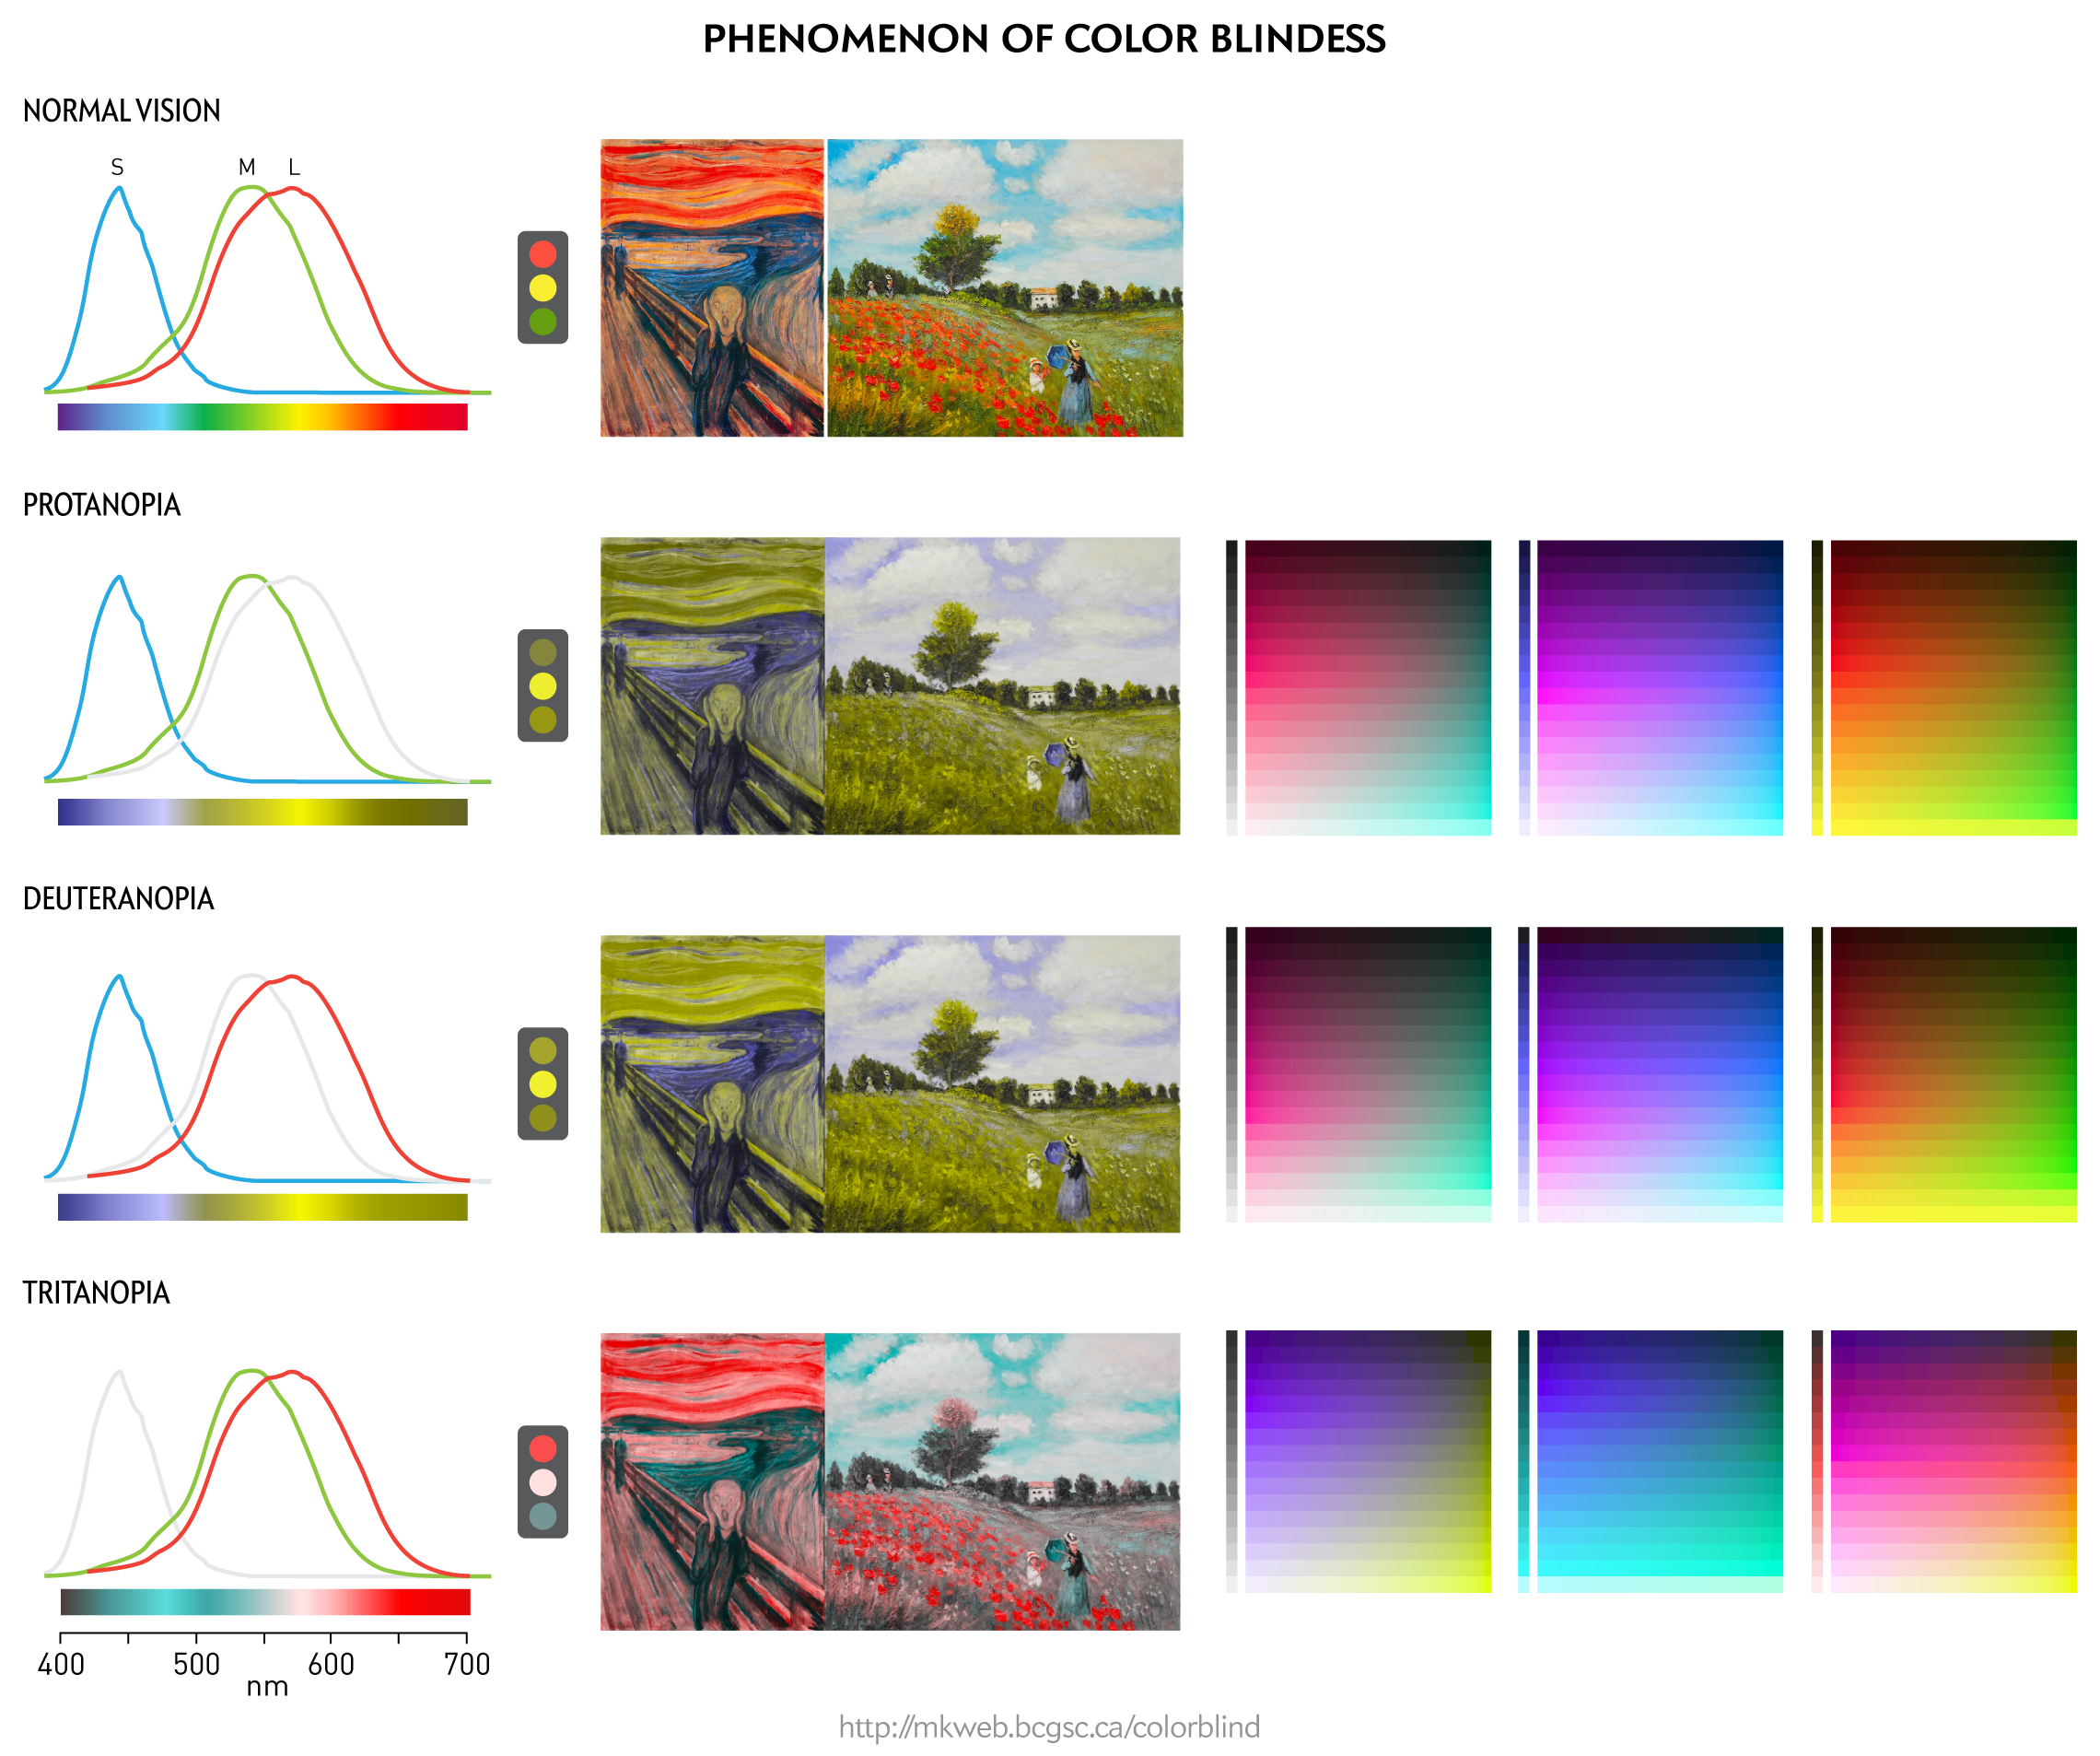 Designing For Color Blindess Martin Krzywinski Genome Sciences Center,Benjamin Moore Best Living Room Colors